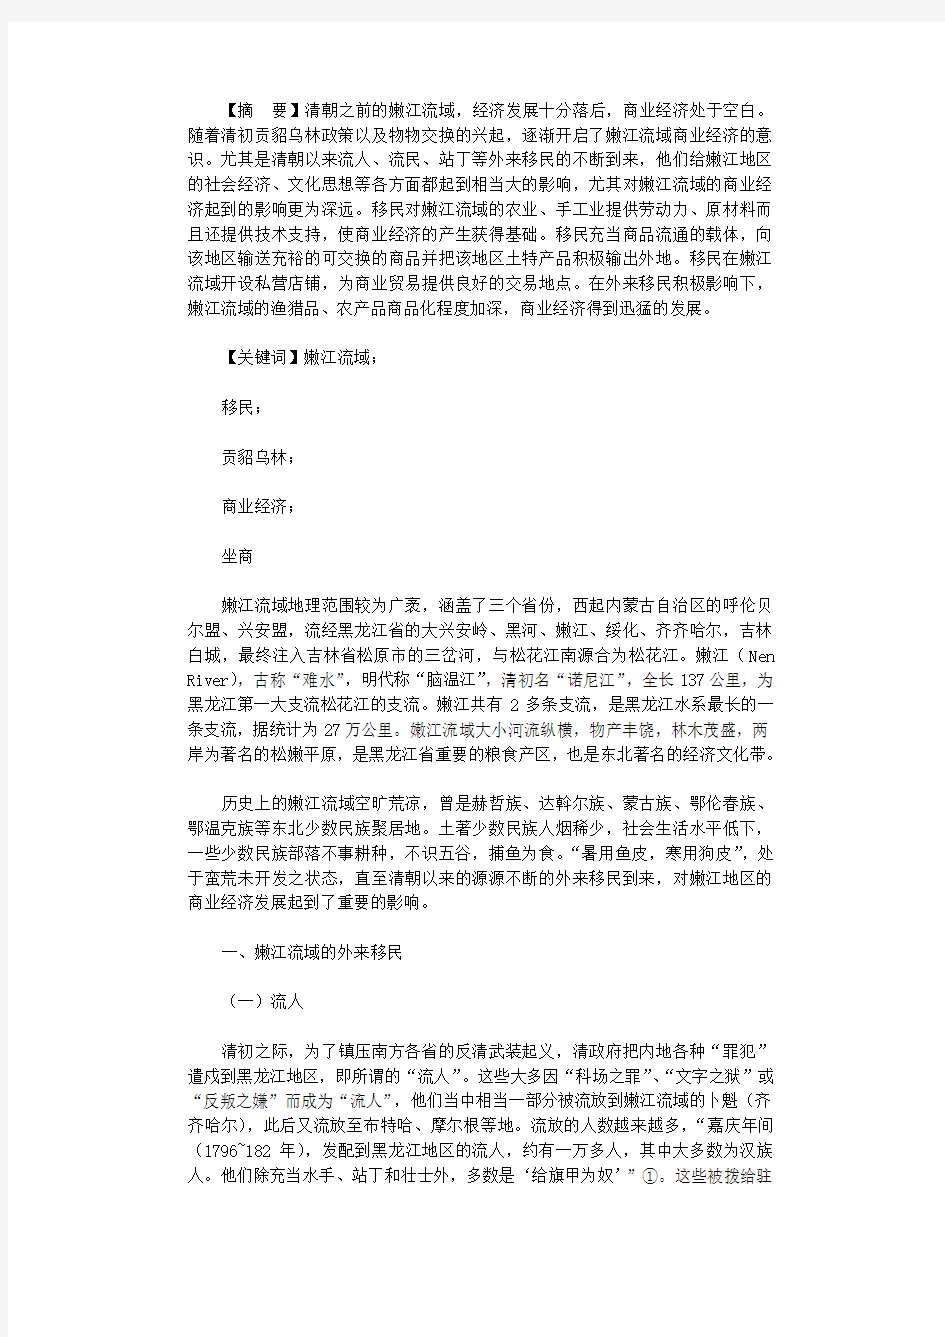 2021年清朝移民对嫩江流域商品经济影响